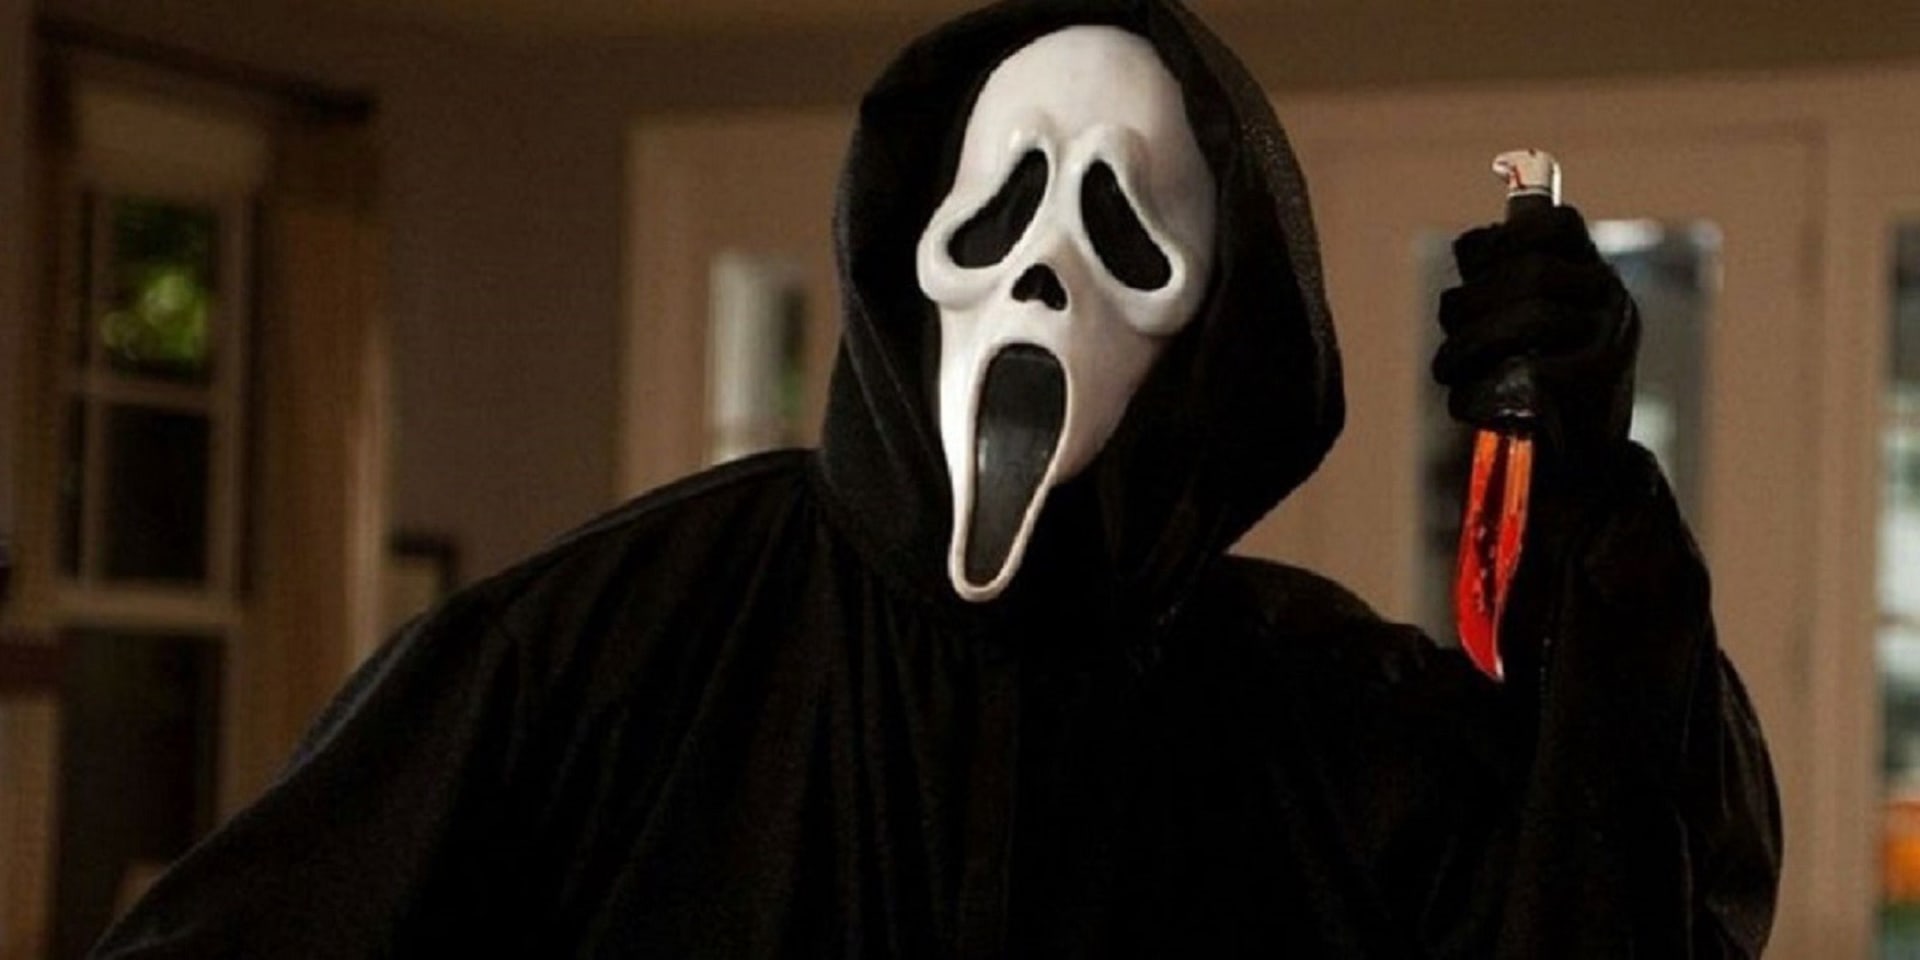 Zabiják Ghostface byl inspirován skutečnými vraždami